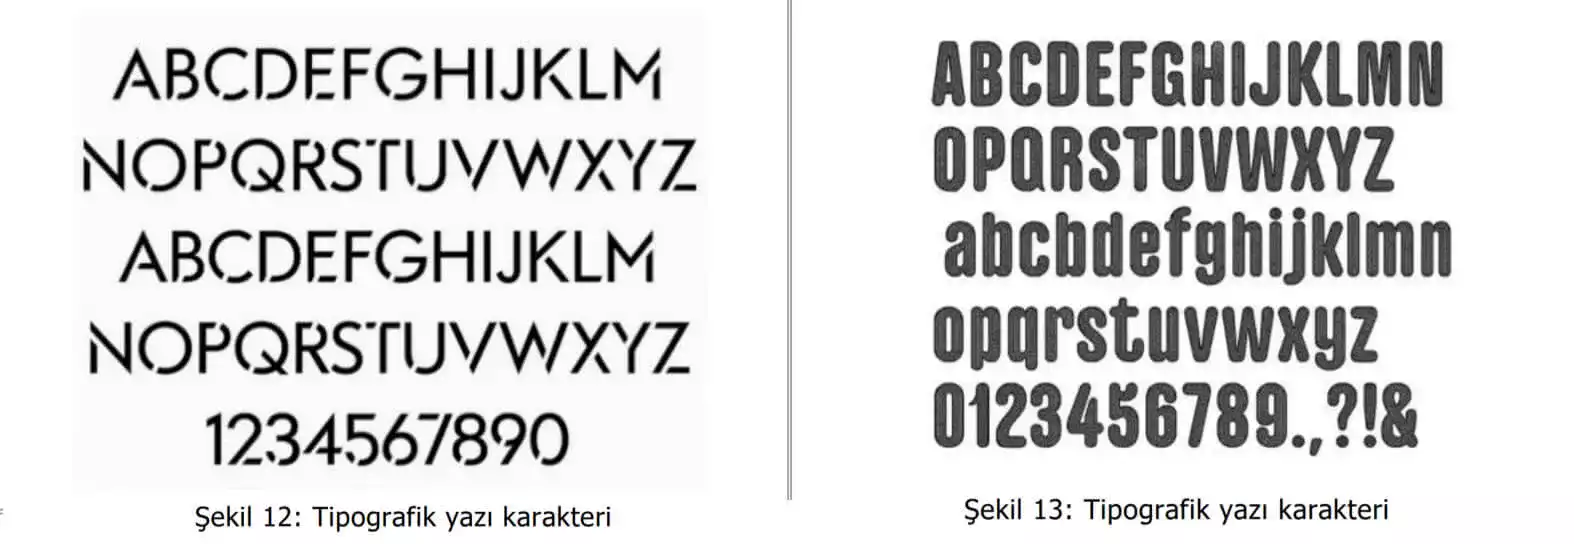 tipografik yazı karakter örnekleri-Merdin Patent